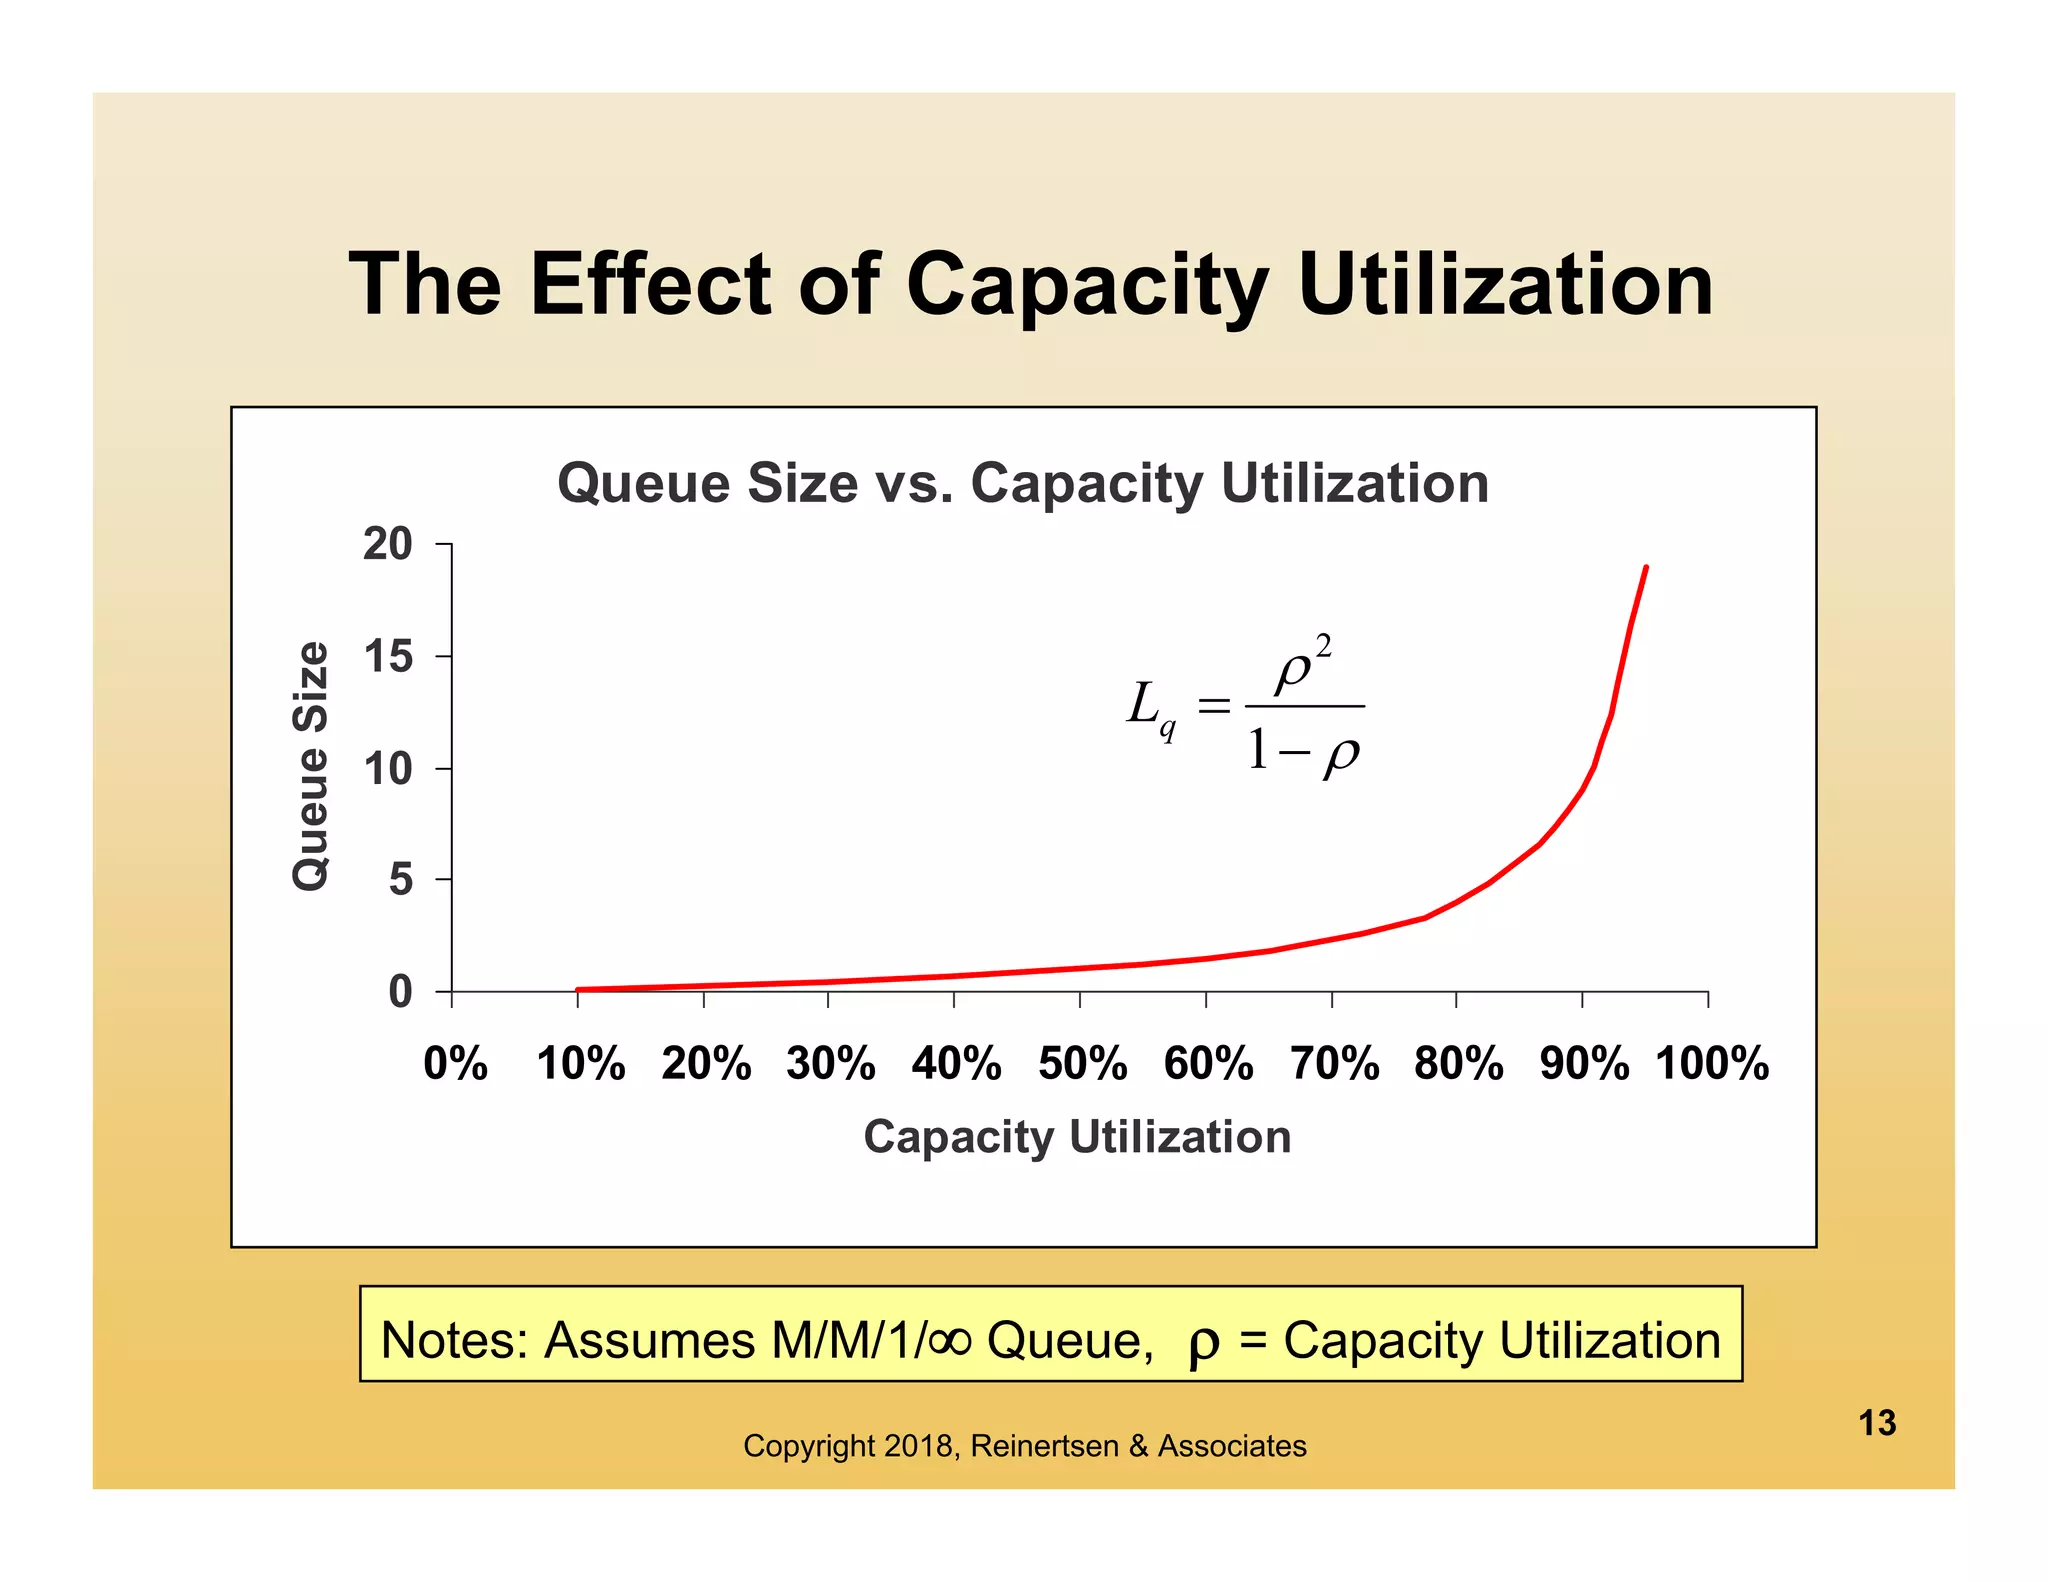 Queue size vs. capacity utilization in the M/M/1/inf queue